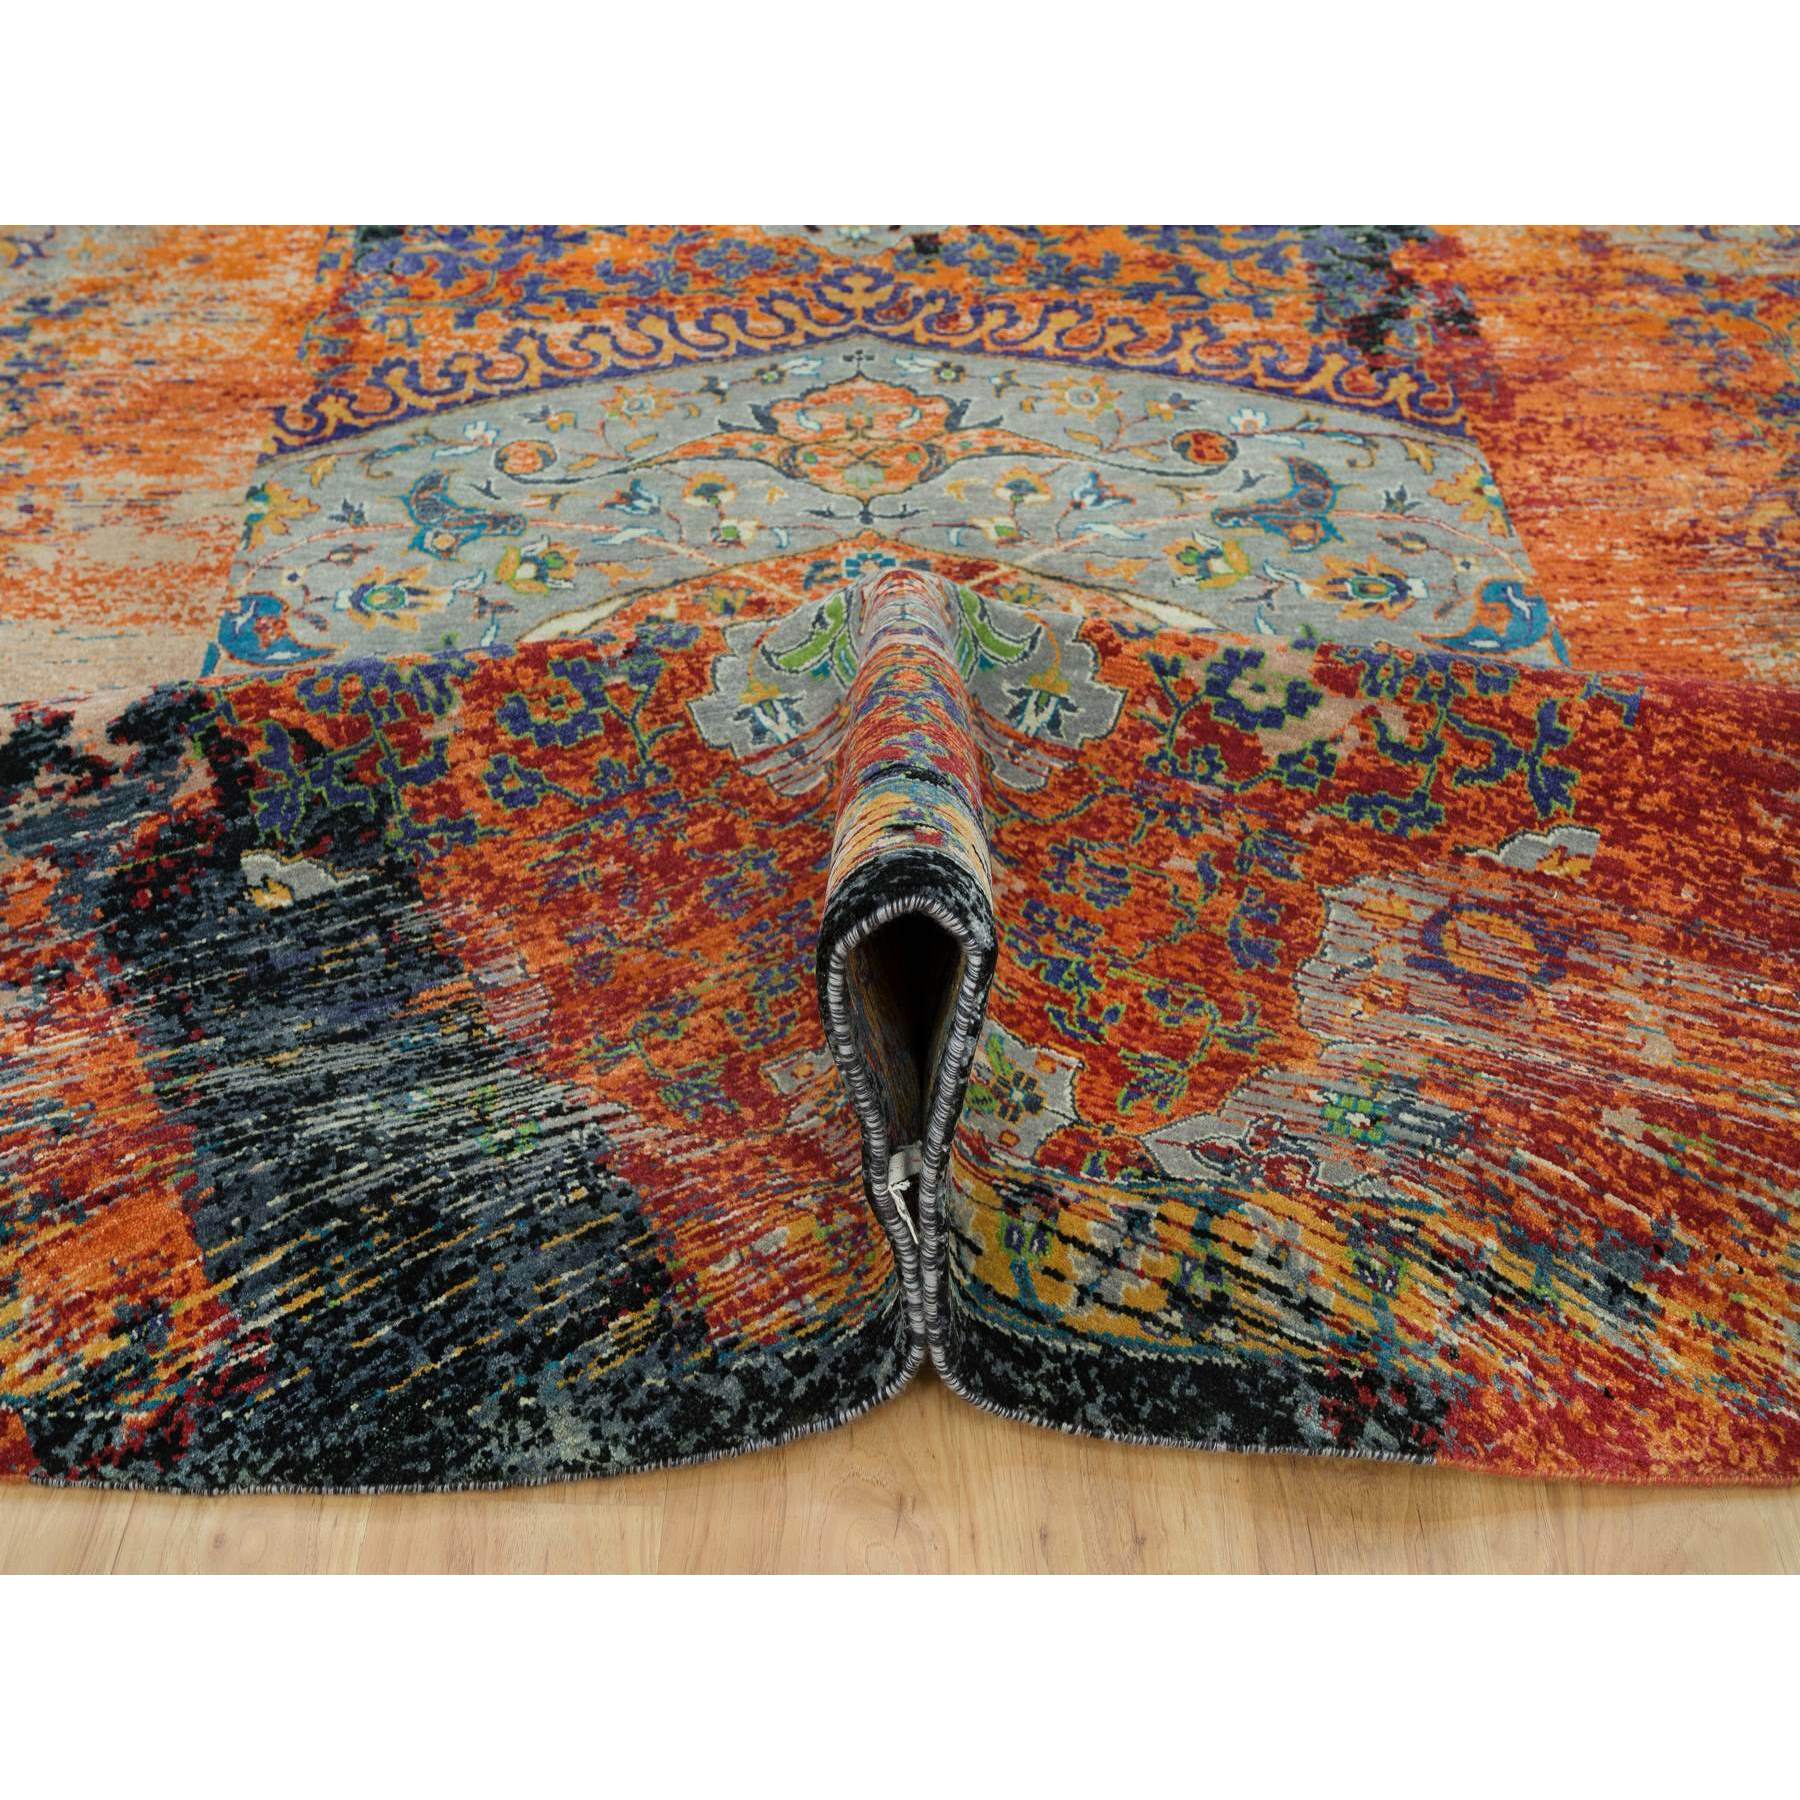 12'1"x12'1" Metallic Orange, Ancient Ottoman Erased Design, Ghazni Wool, Hand Woven, Round Oriental Rug 